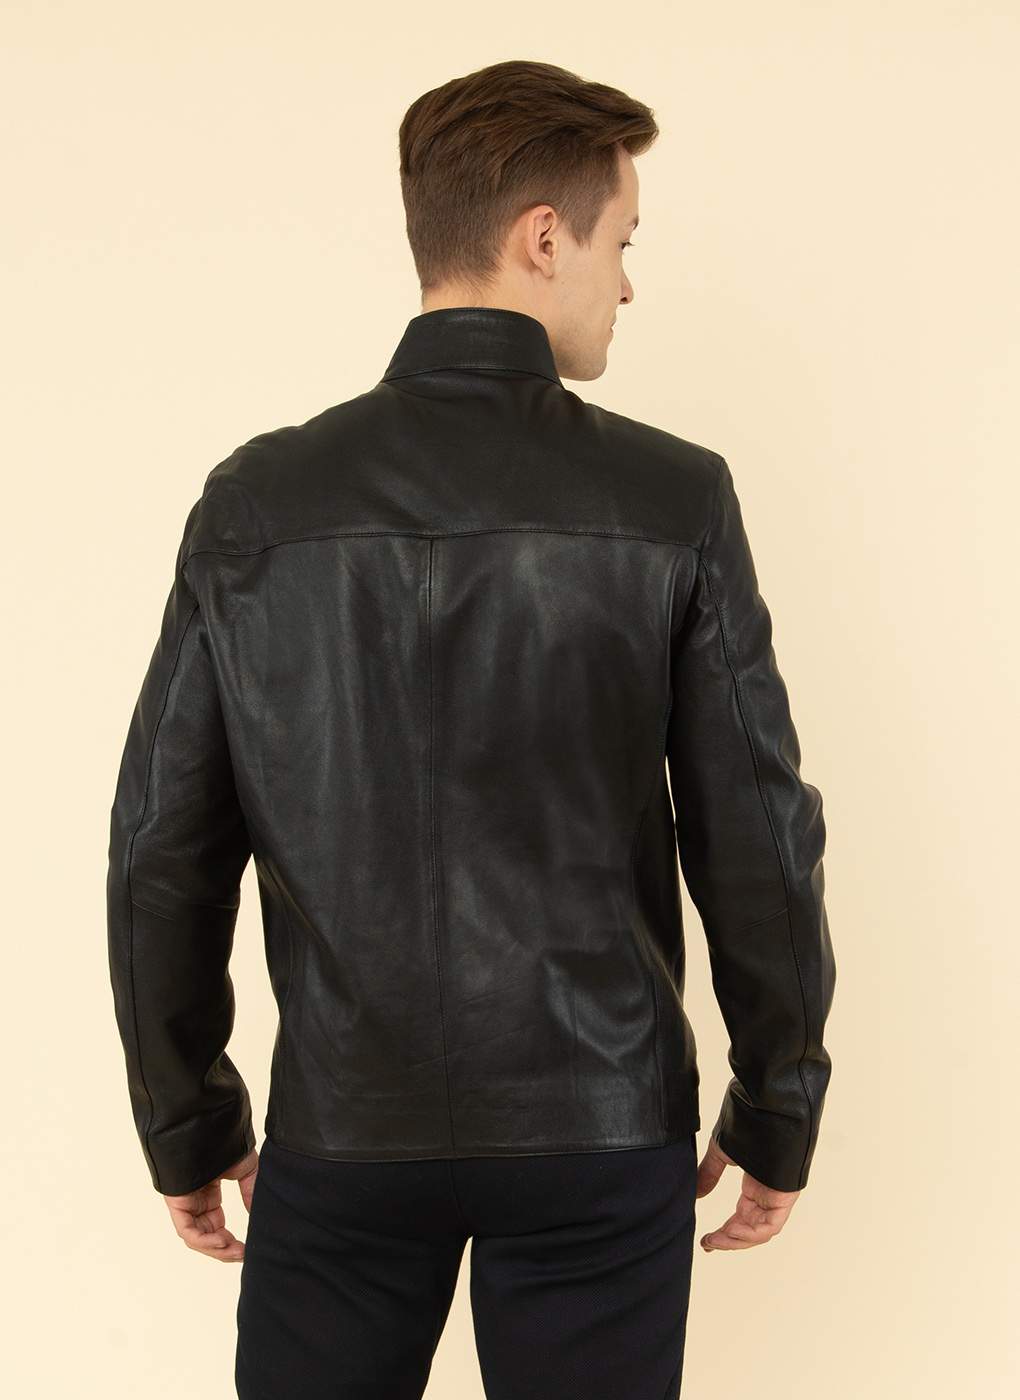 Кожаная куртка мужская Каляев 1626653 черная 48 RU